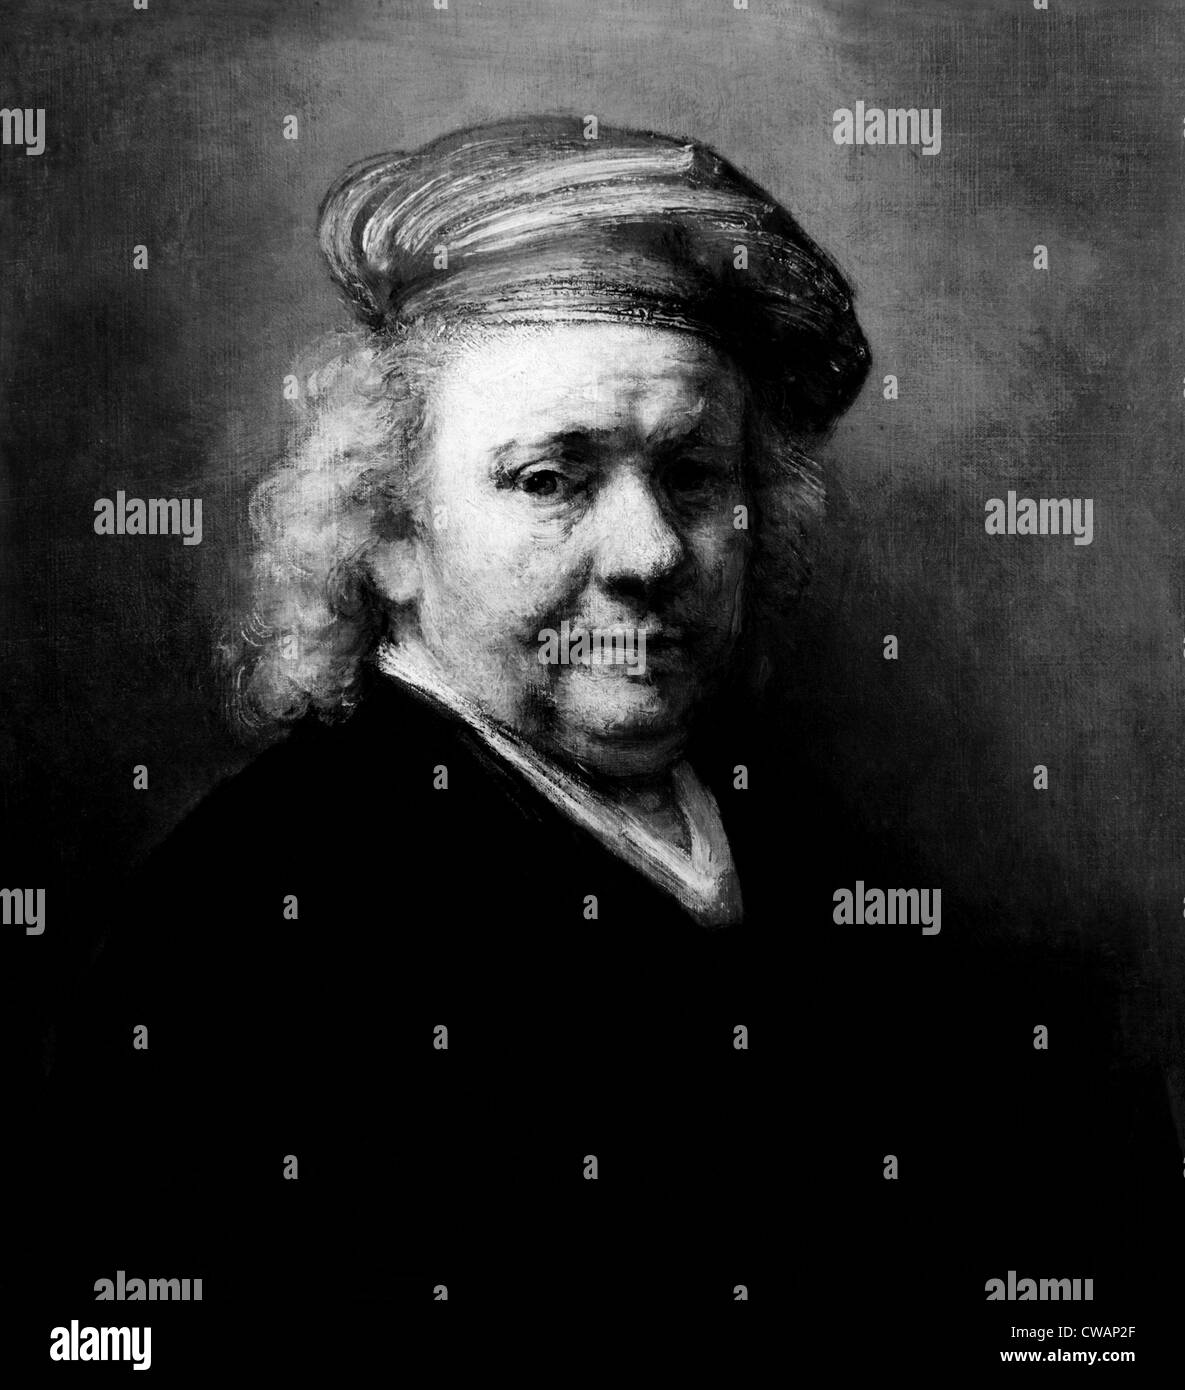 Ein Selbstporträt des niederländischen Malers Rembrandt Harmenszoon van Rijn (aka Rembrandt) (1606 – 1669), c. 1669. Höflichkeit: CSU Archive / Stockfoto